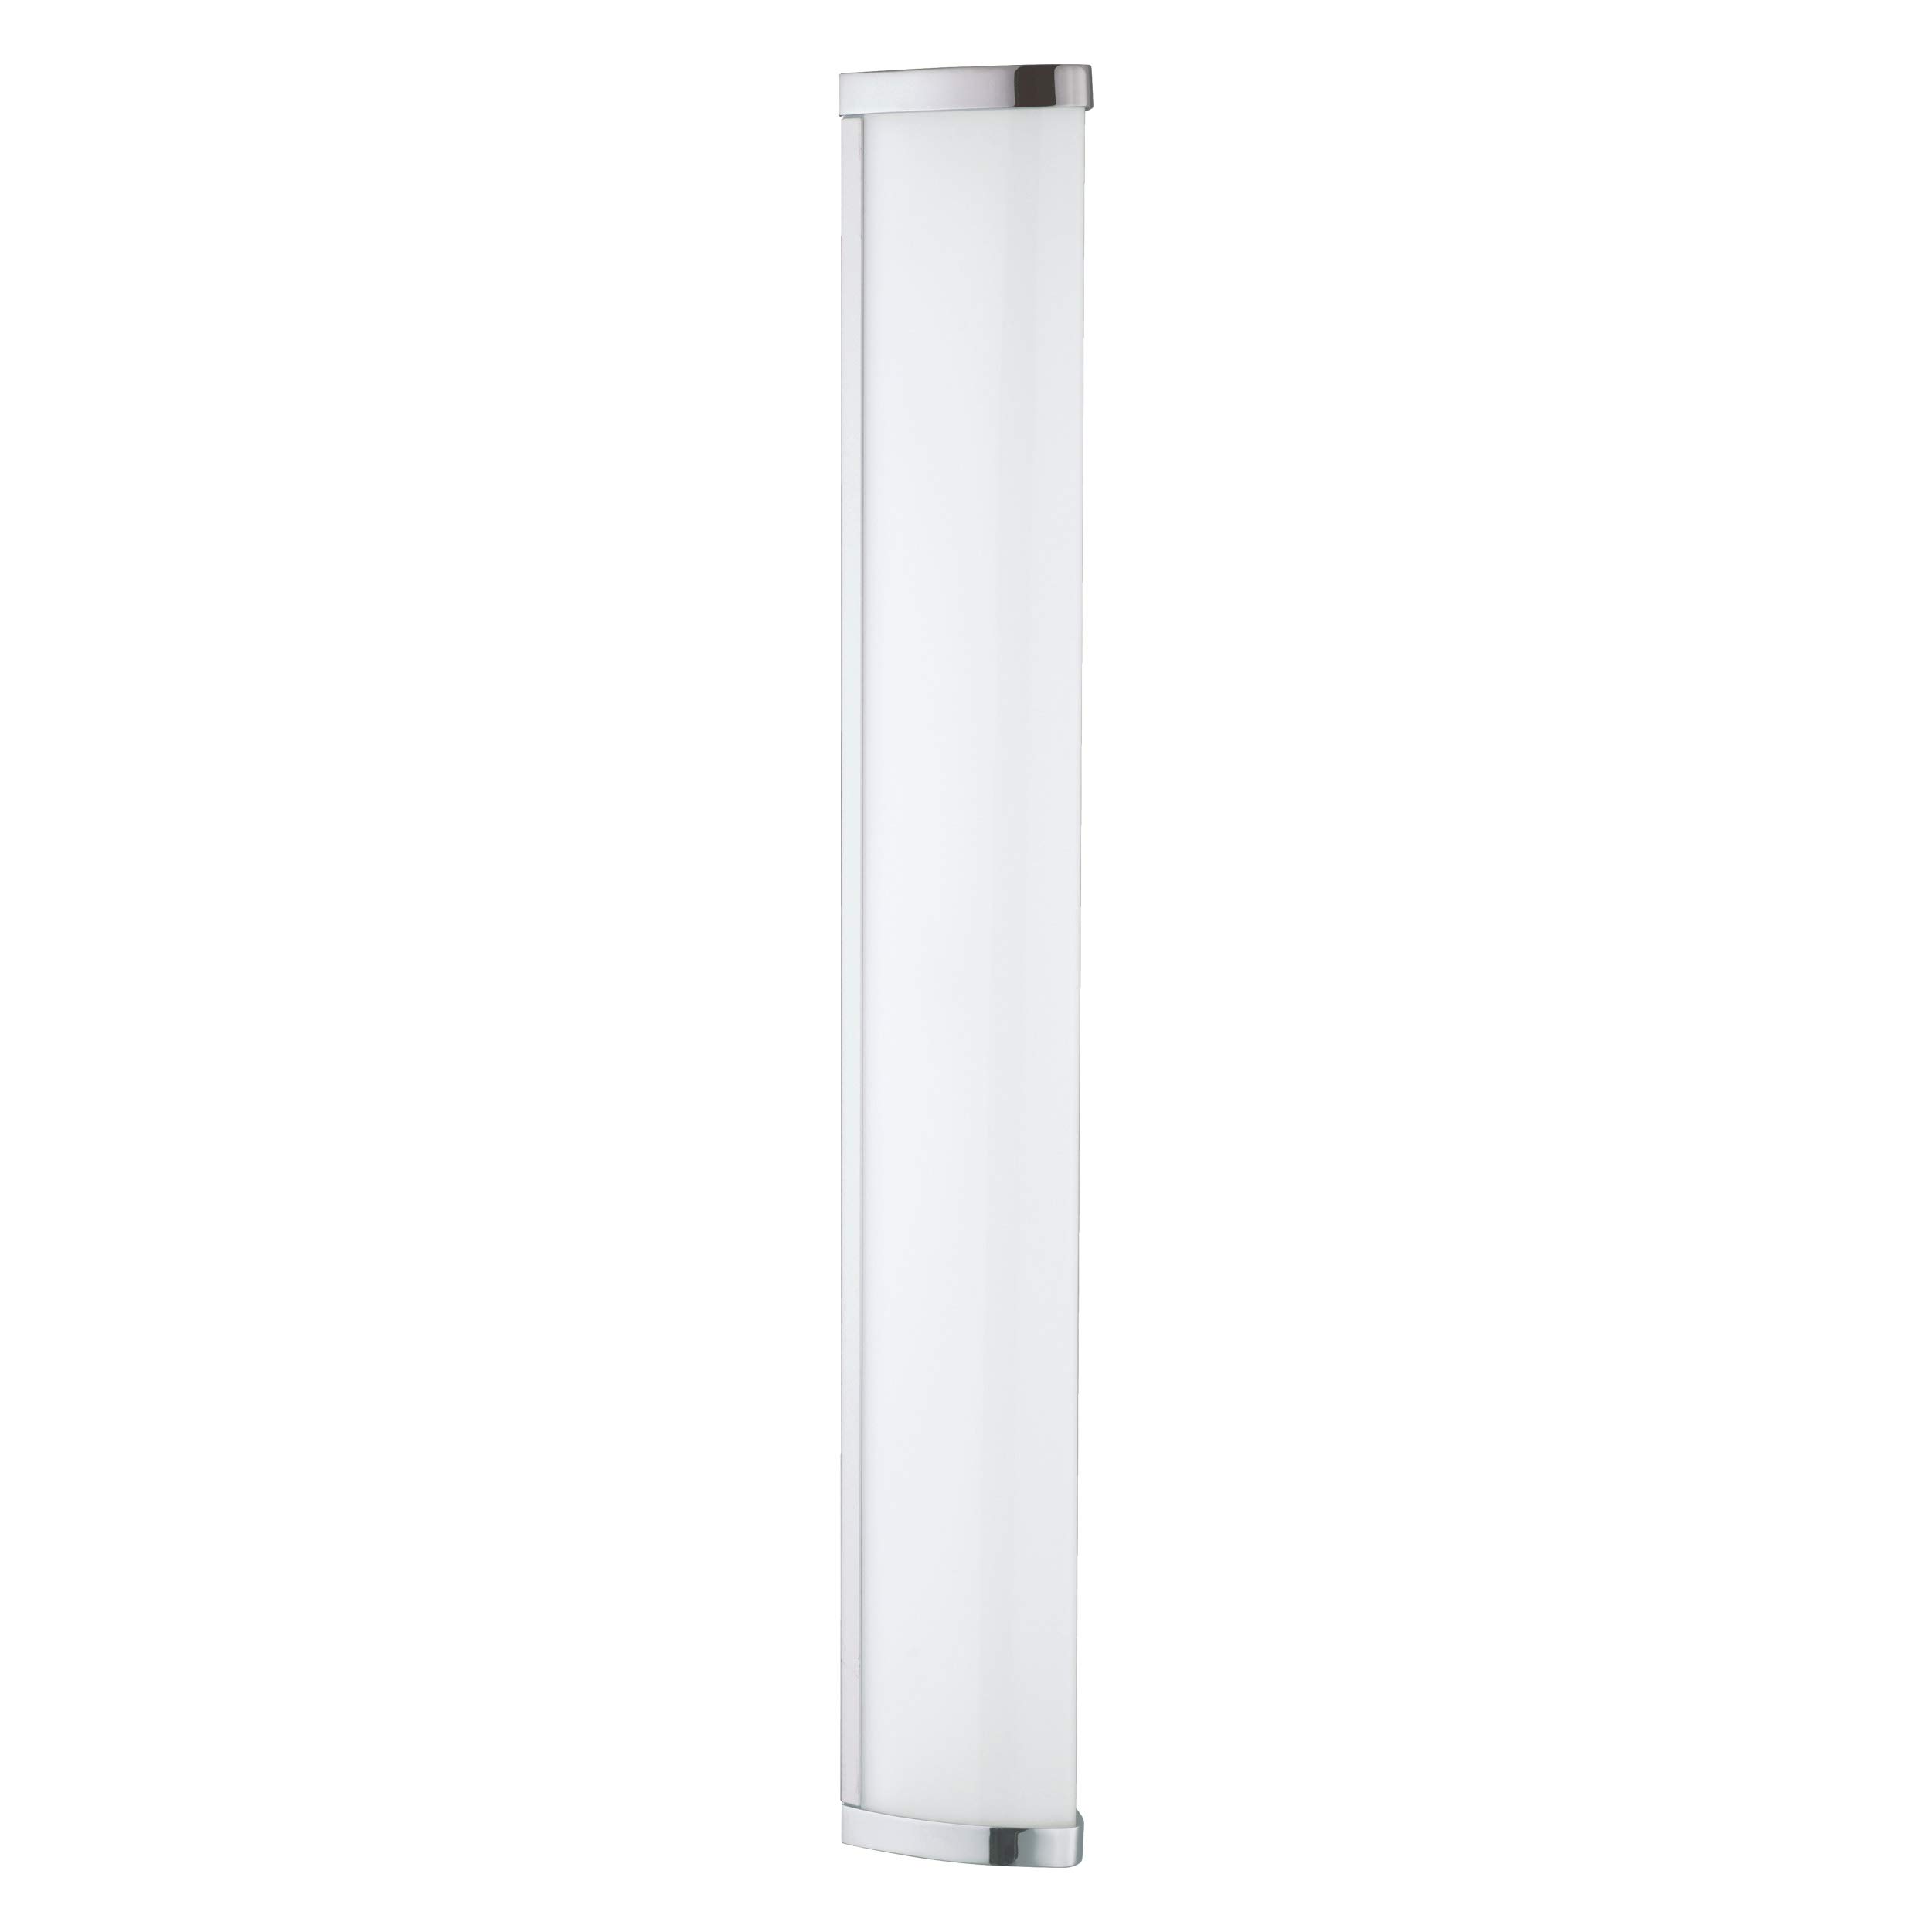 EGLO LED Wandlampe Gita 2, Spiegelleuchte aus aus Metall-Guss in Chrom und Kunststoff in Weiß, Badezimmer Lampe, LED Feuchtraumleuchte neutralweiß, IP44, L 60 cm